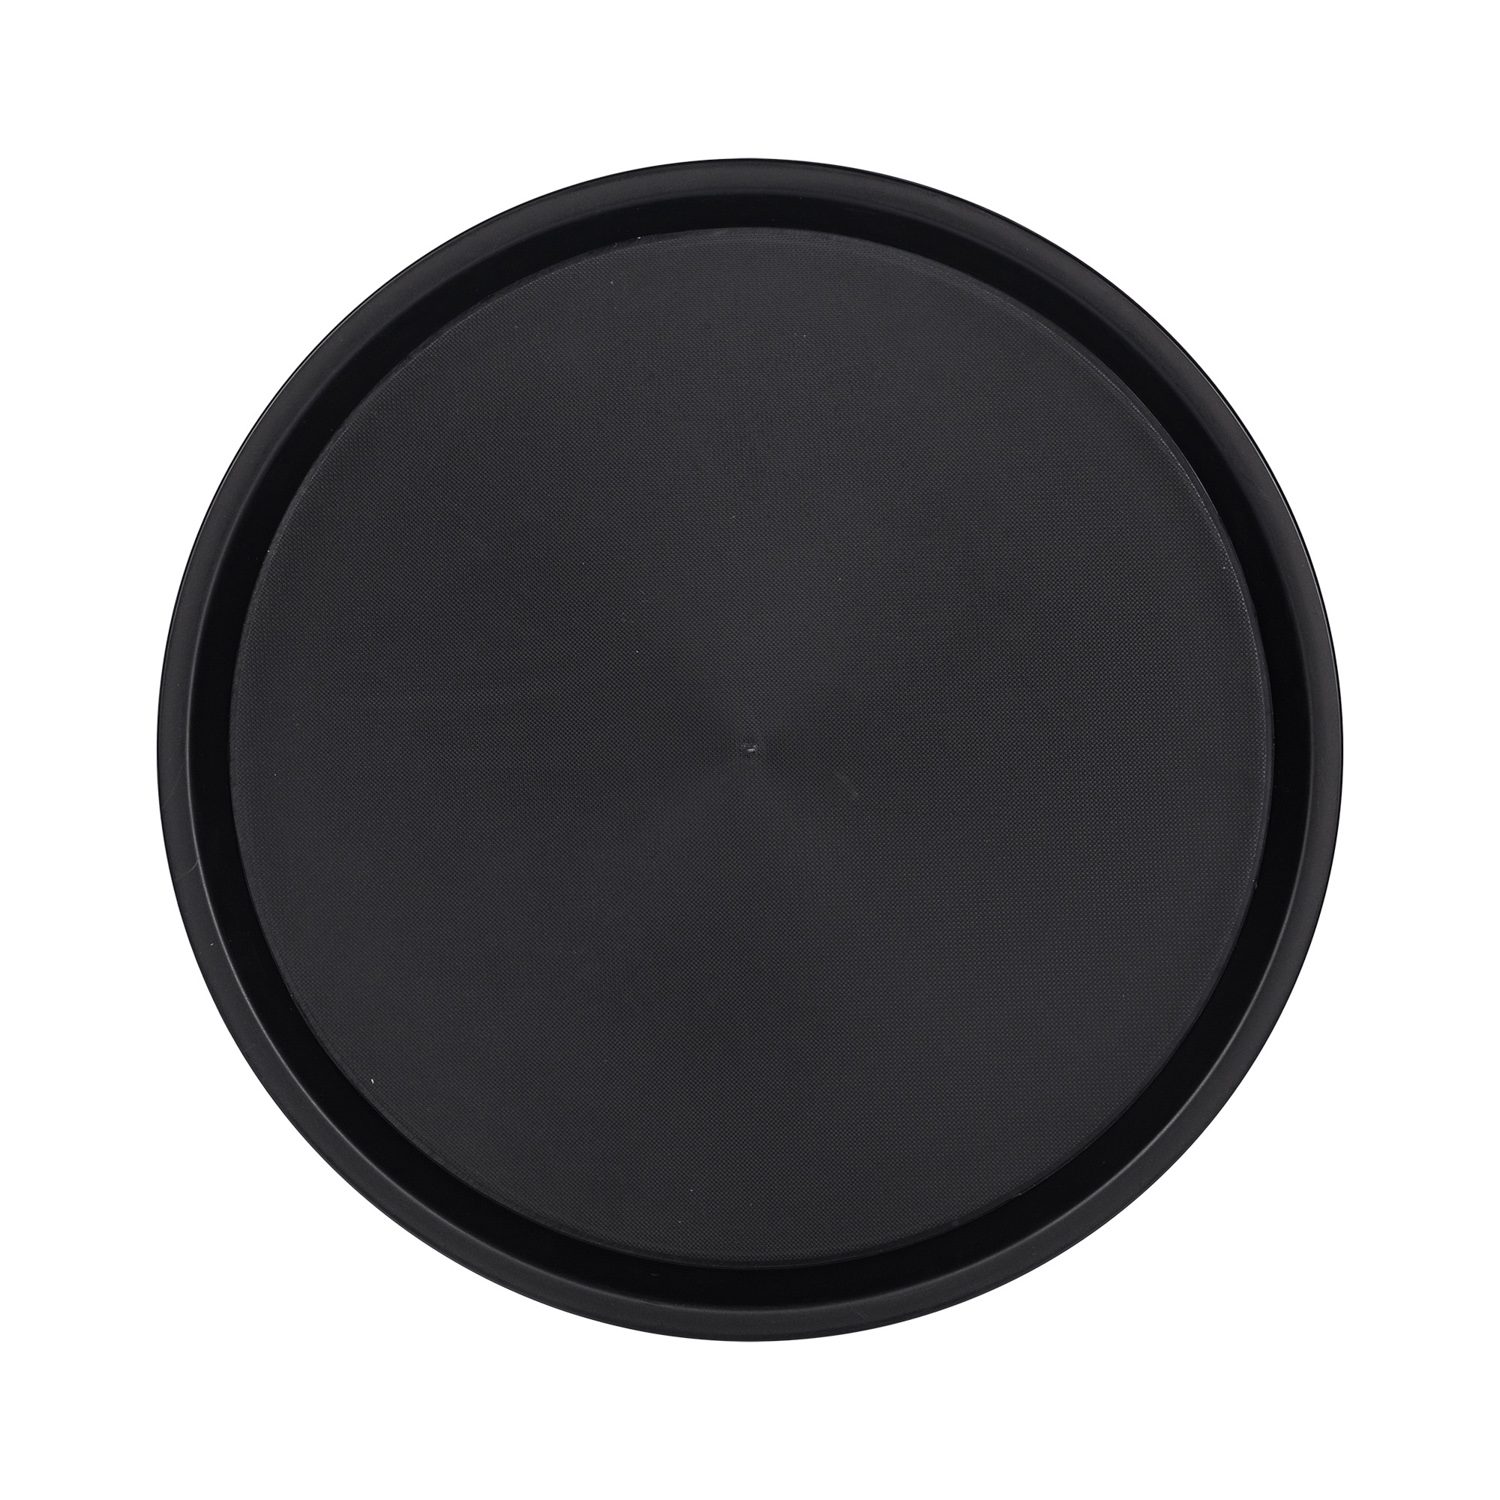 Serviertablett "OHIO", aus Kunststoff, schwarz, rund, Maßeca.: Ø 36,5 cm x H 2 cm, spülmaschinengeeignet, stapelbar,